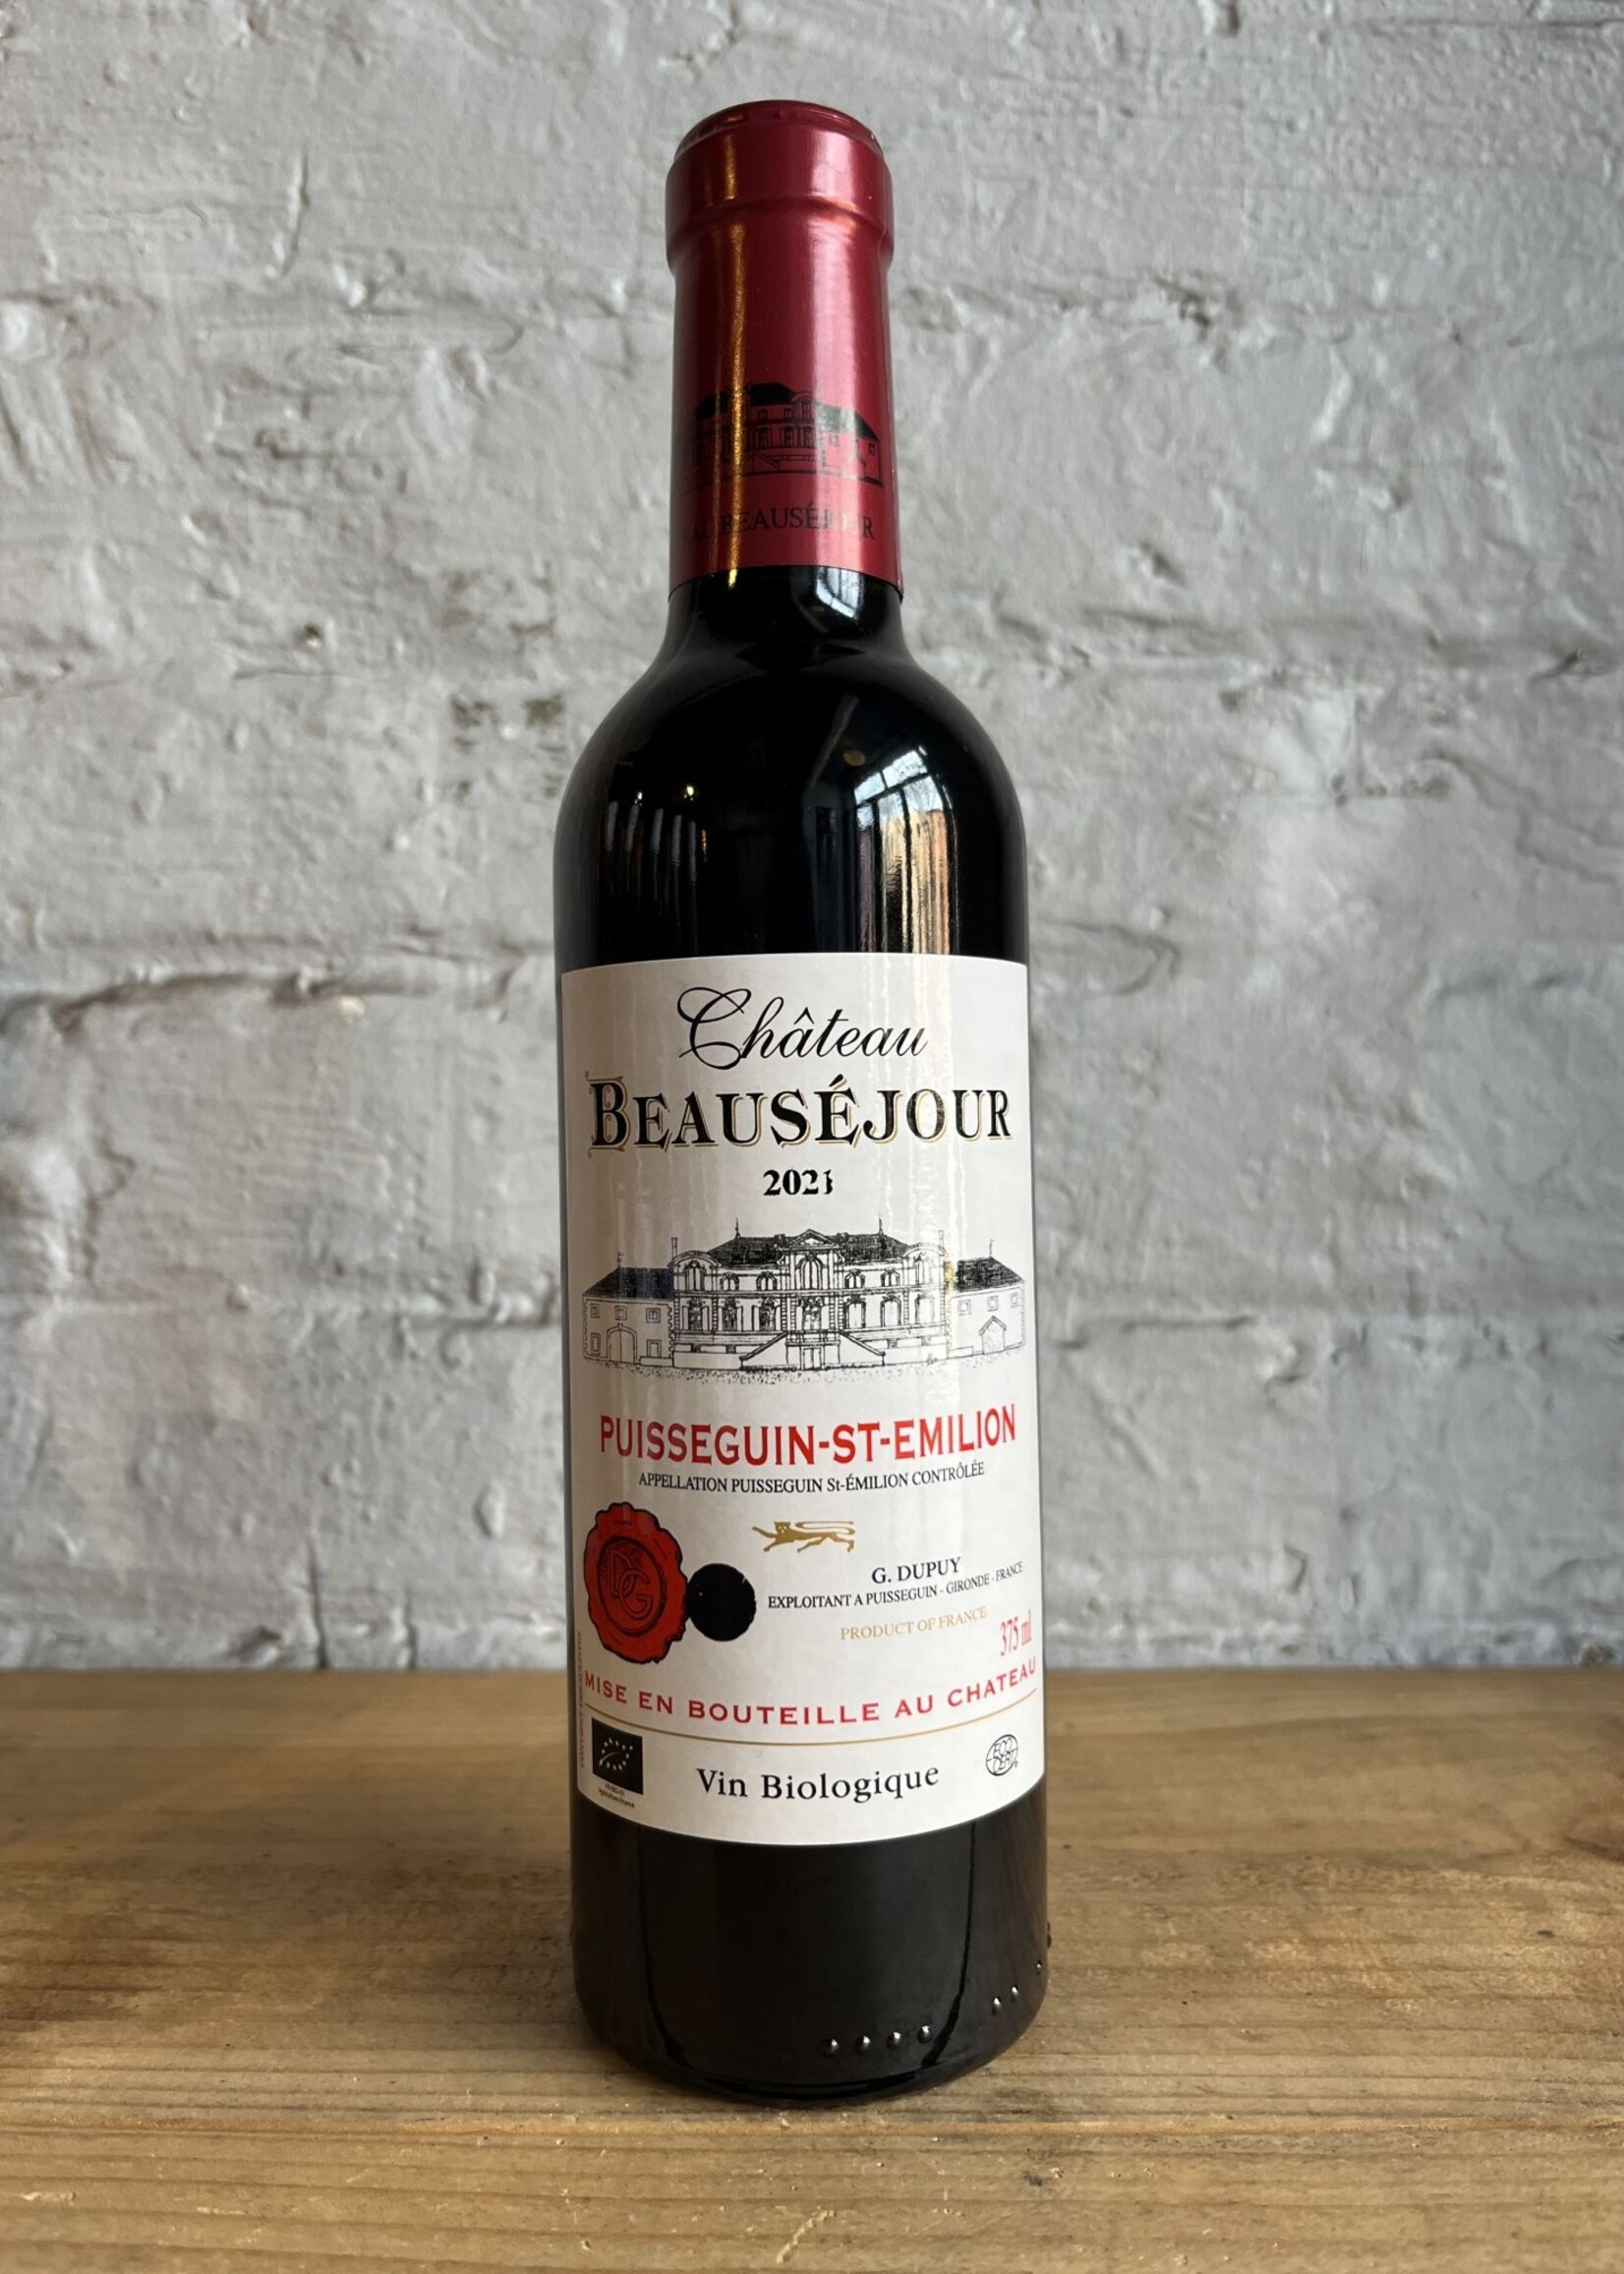 Wine 2021 Chateau Beausejour-Bassac Puisseguin Saint-Emilion - Bordeaux, France (375ml)